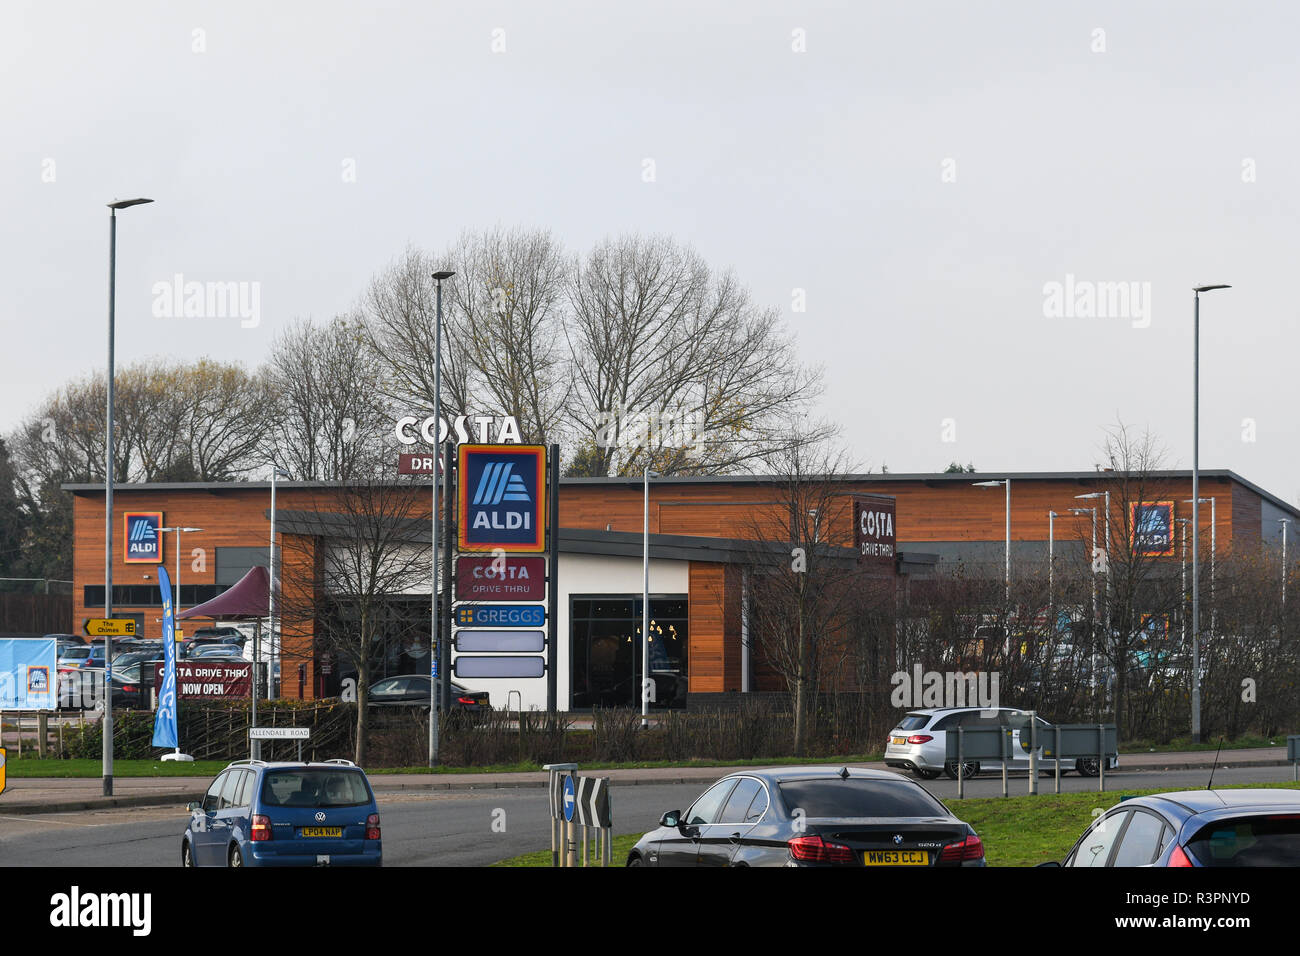 new aldi supermarket in loughborough Stock Photo